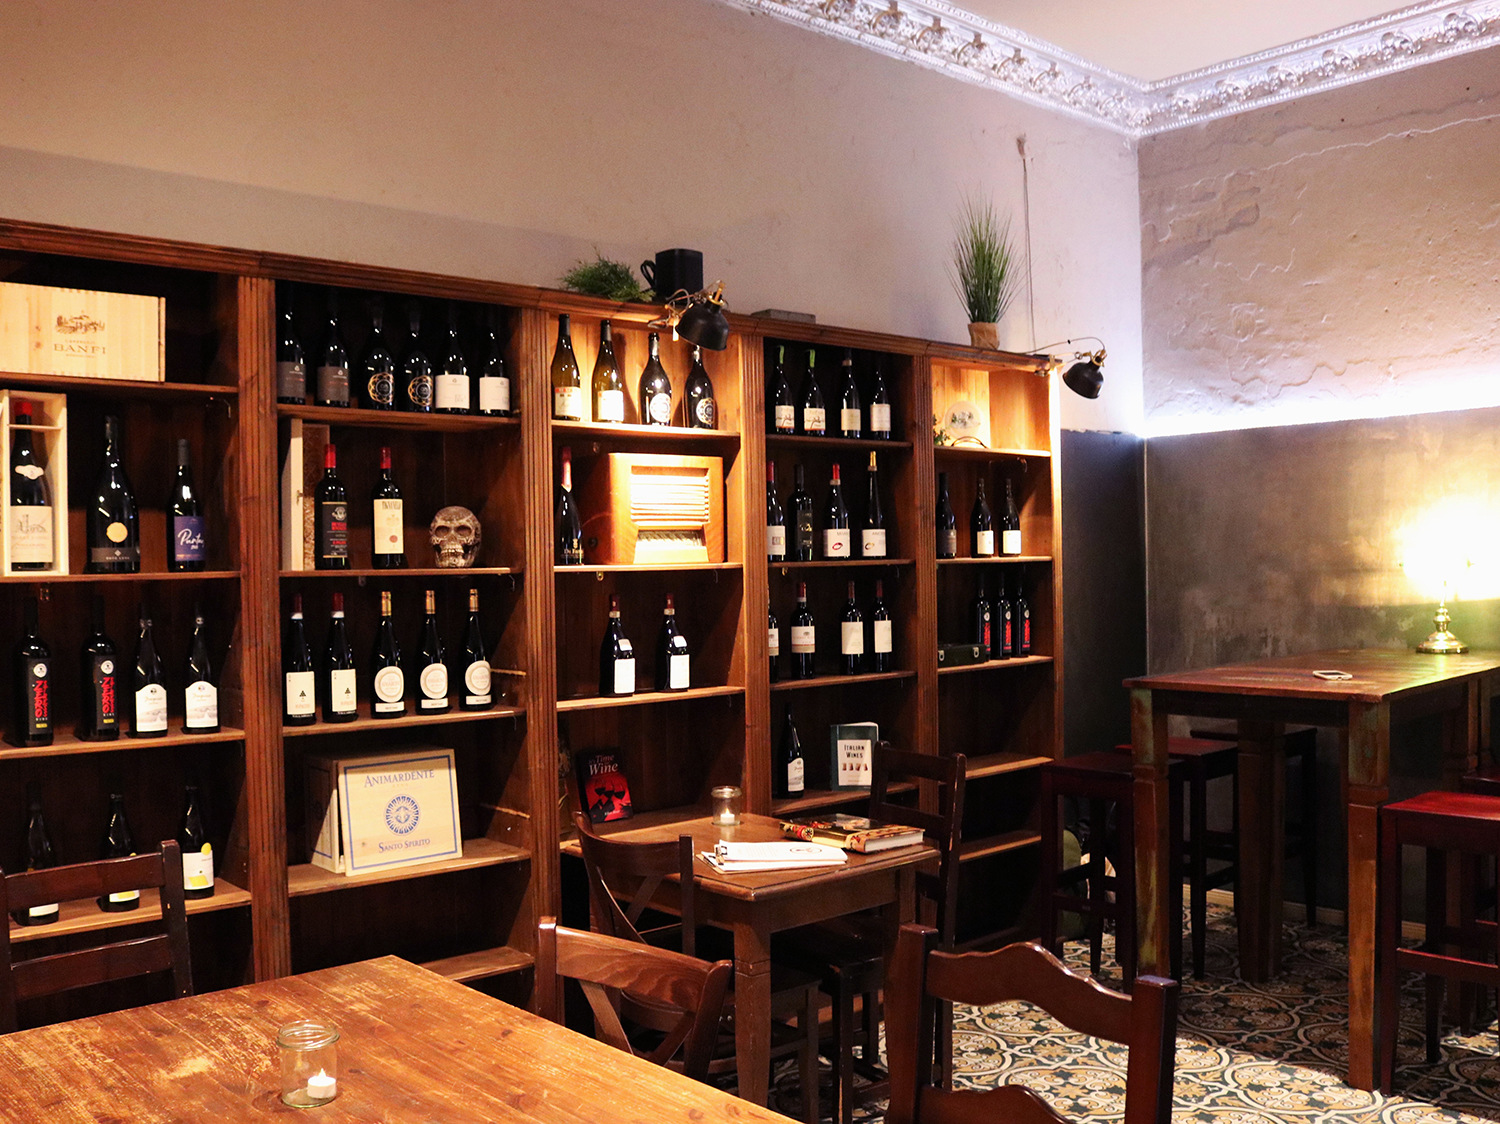 Die Zerostress Weinbar ist nicht nur eine gute Adresse für italienische Küche, sondern vor allem eine Weinbar.